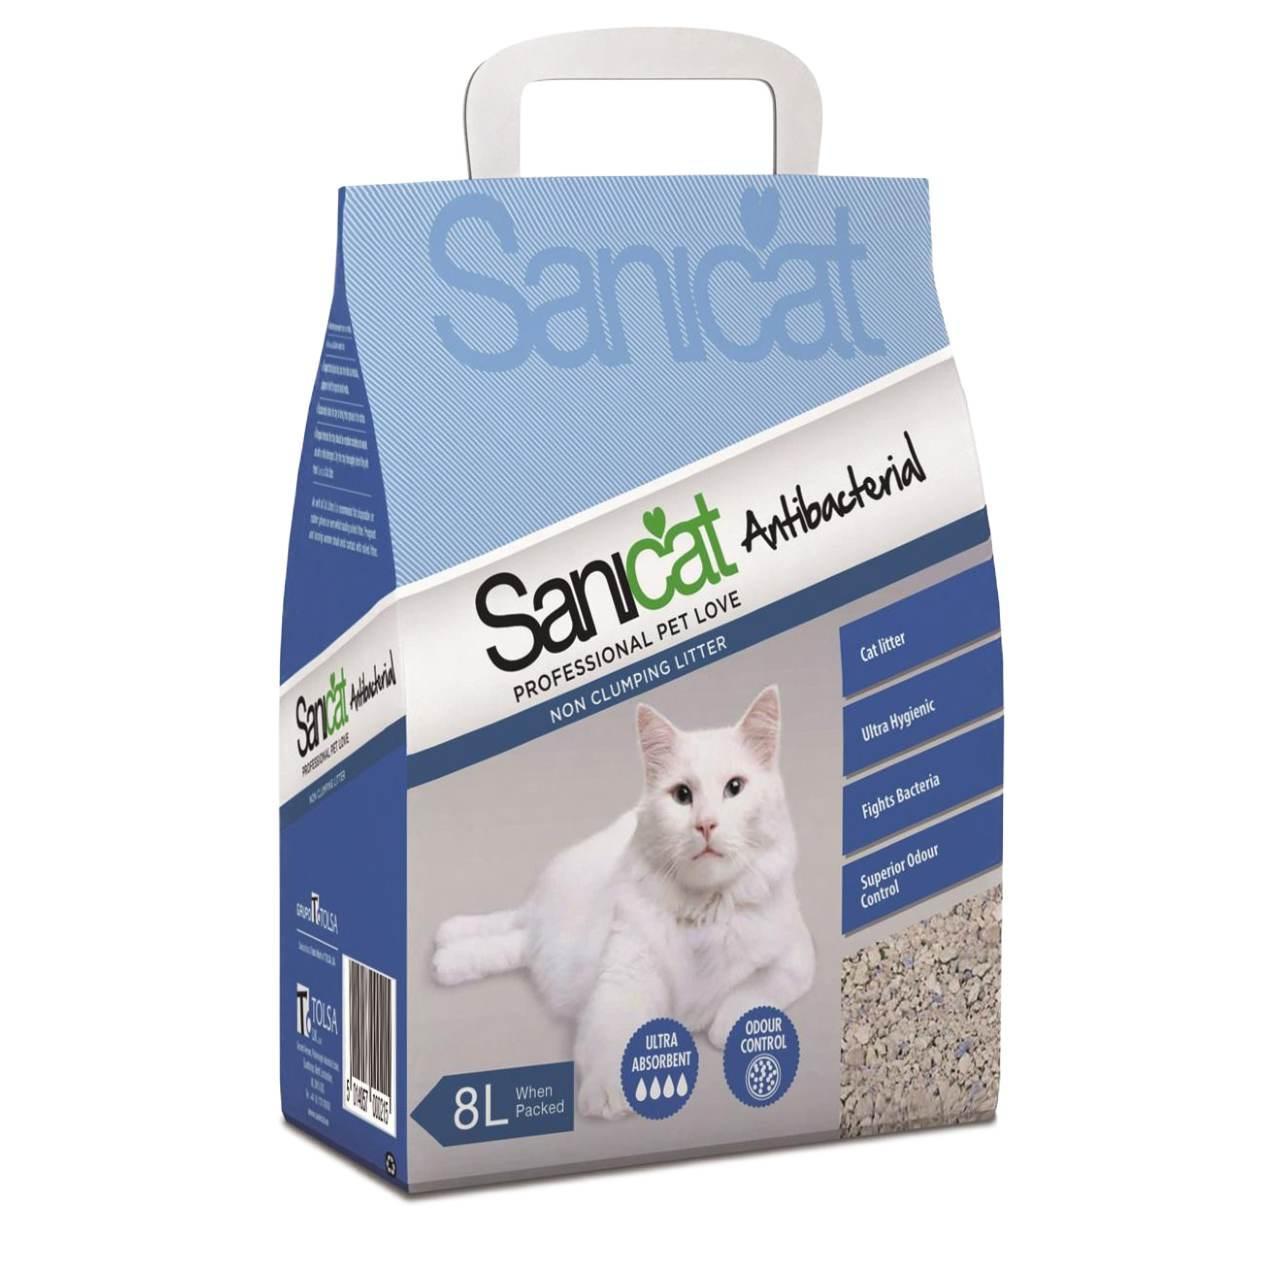 An image of Sanicat Antibacterial Non-Clumping Cat Litter